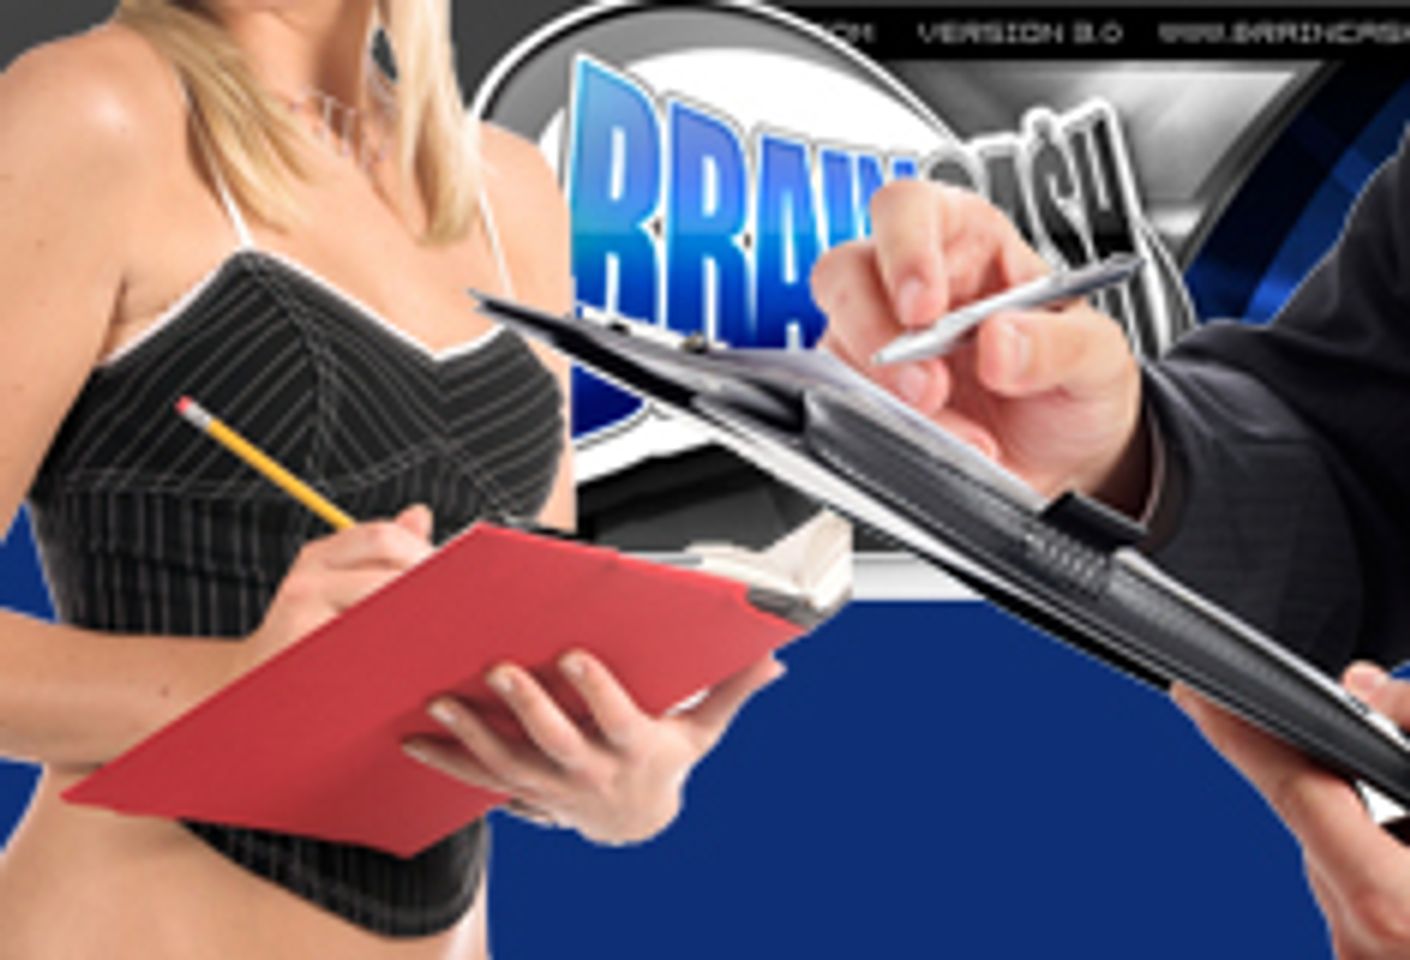 BrainCash.com Adds Marketing Tools